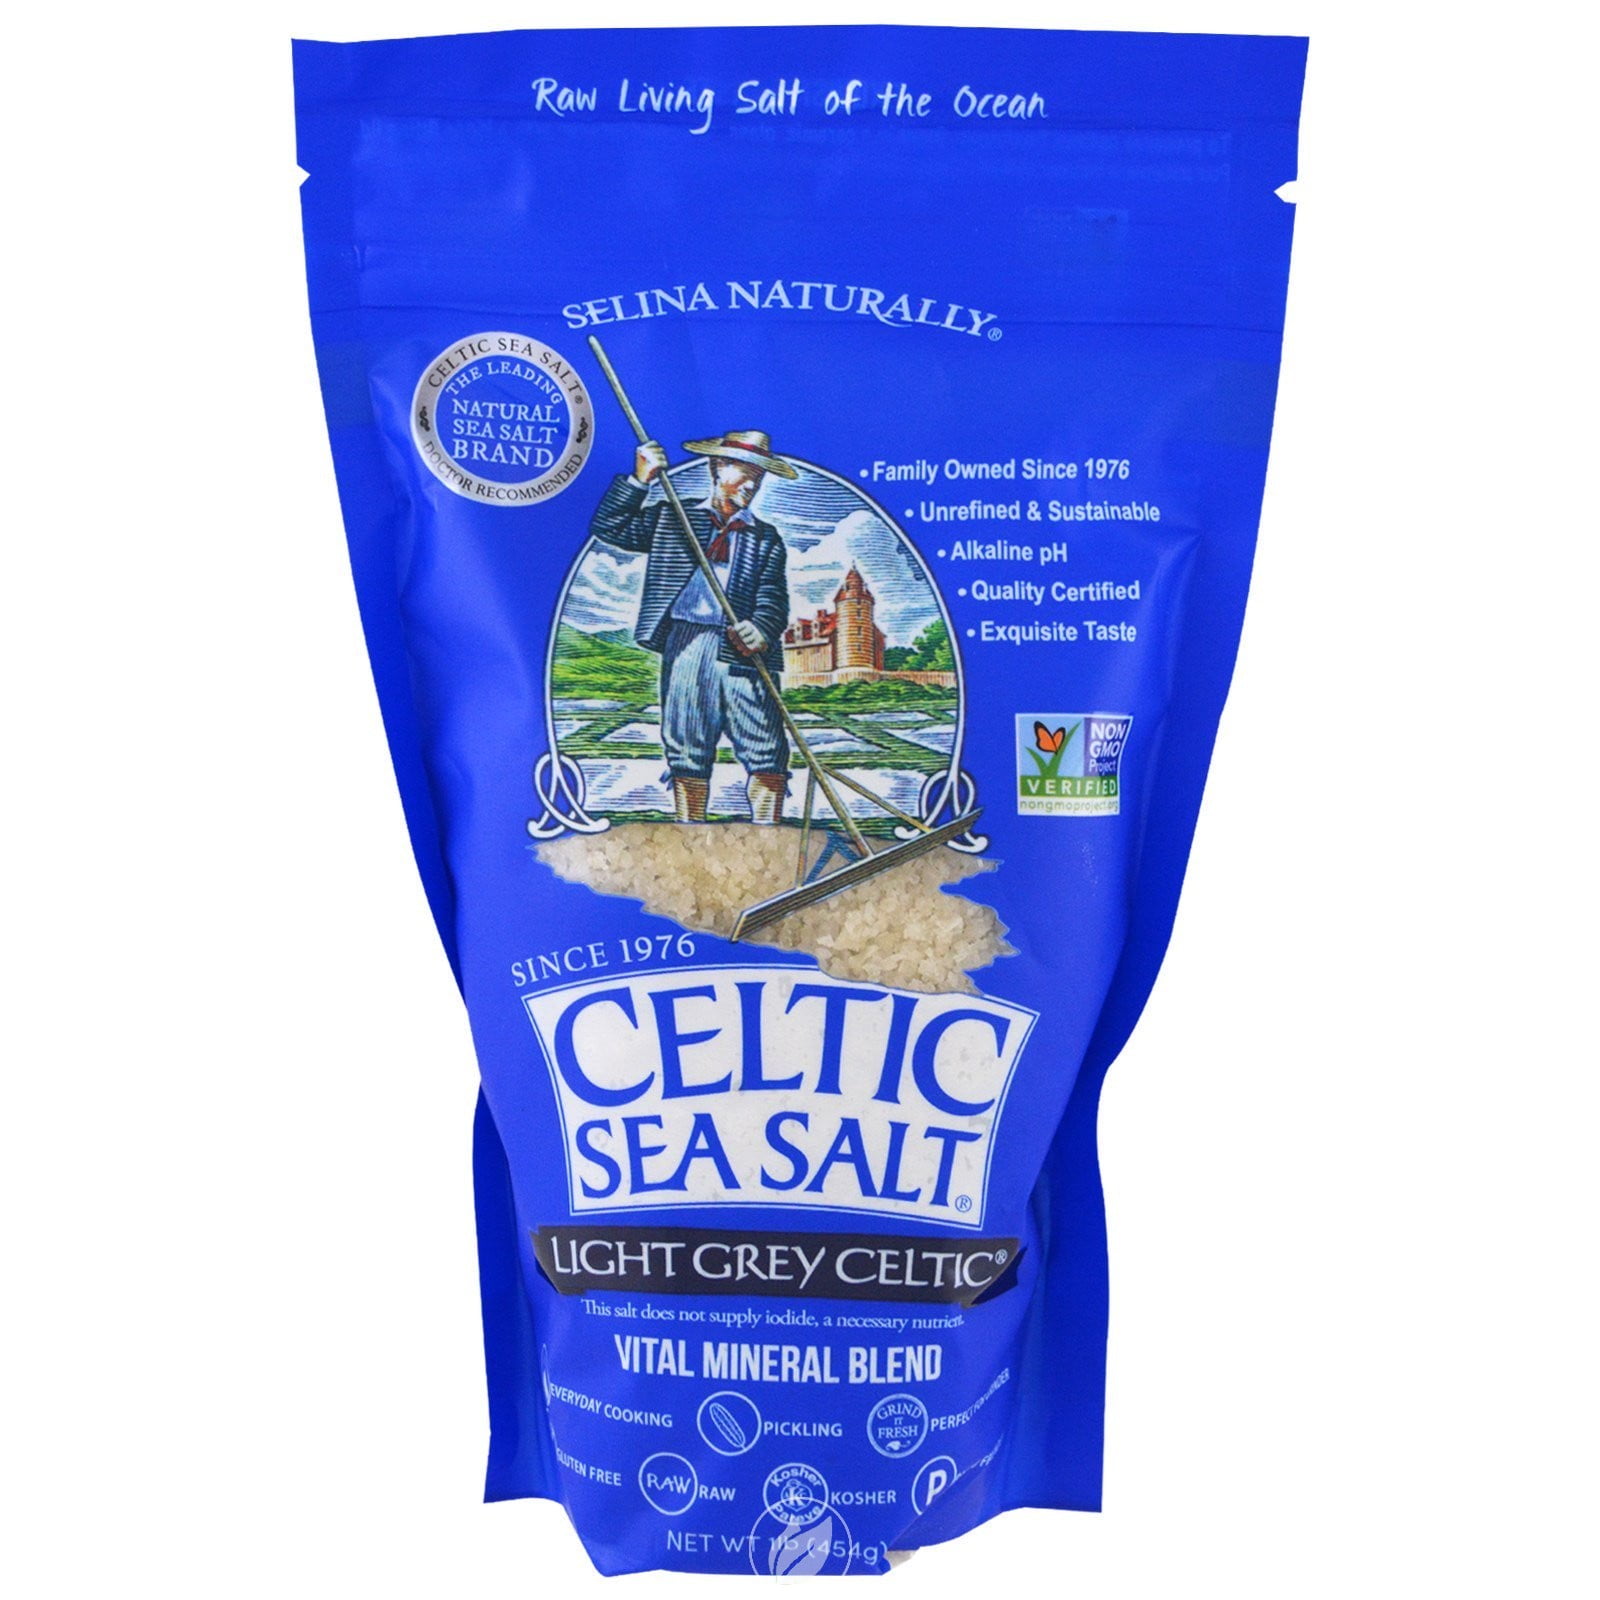 Original Celtic Grey Sea Salt